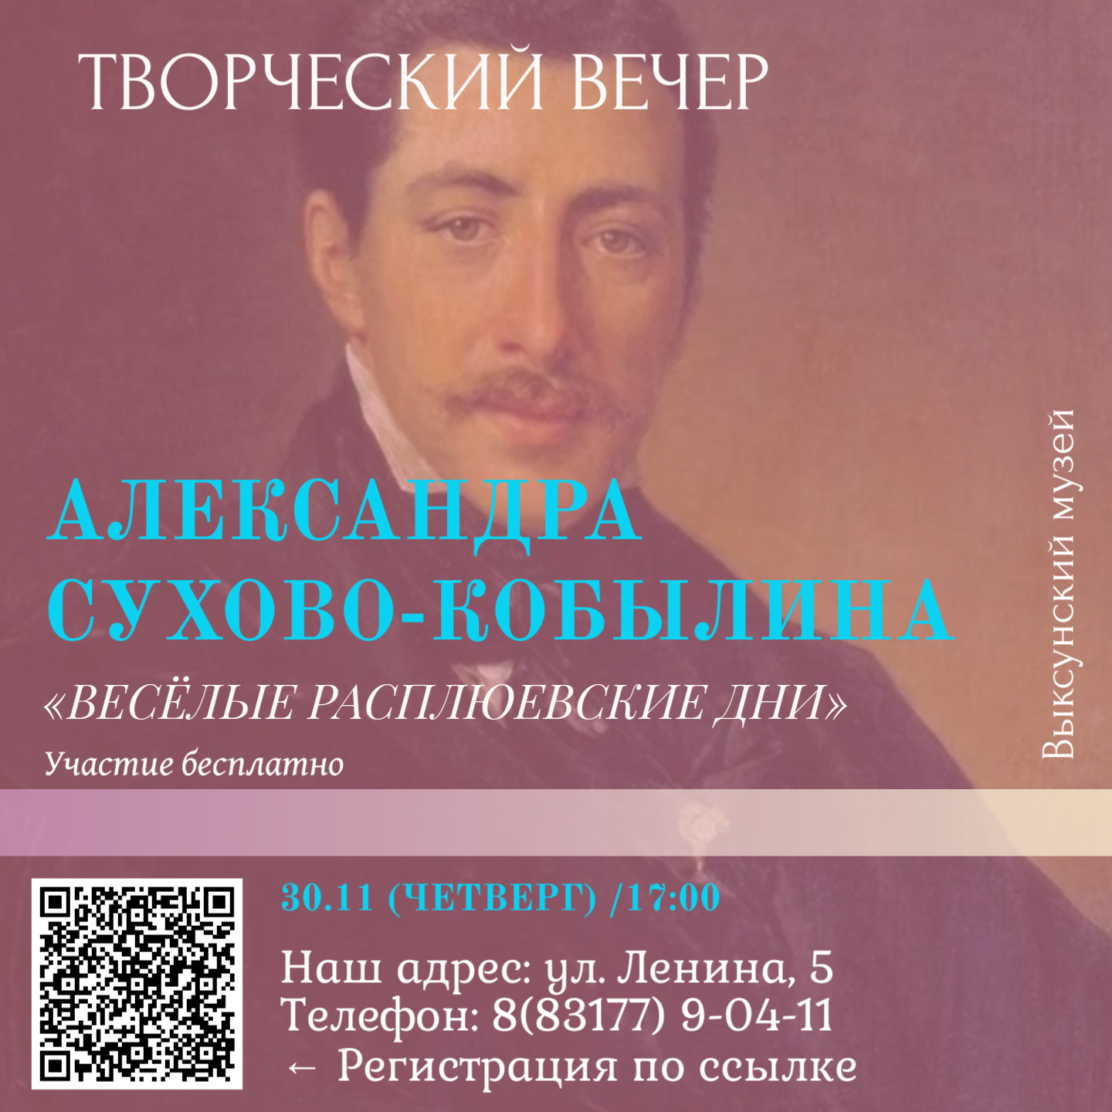 Творческий вечер, посвящённый Александру Сухово-Кобылину в музее истории ВМЗ